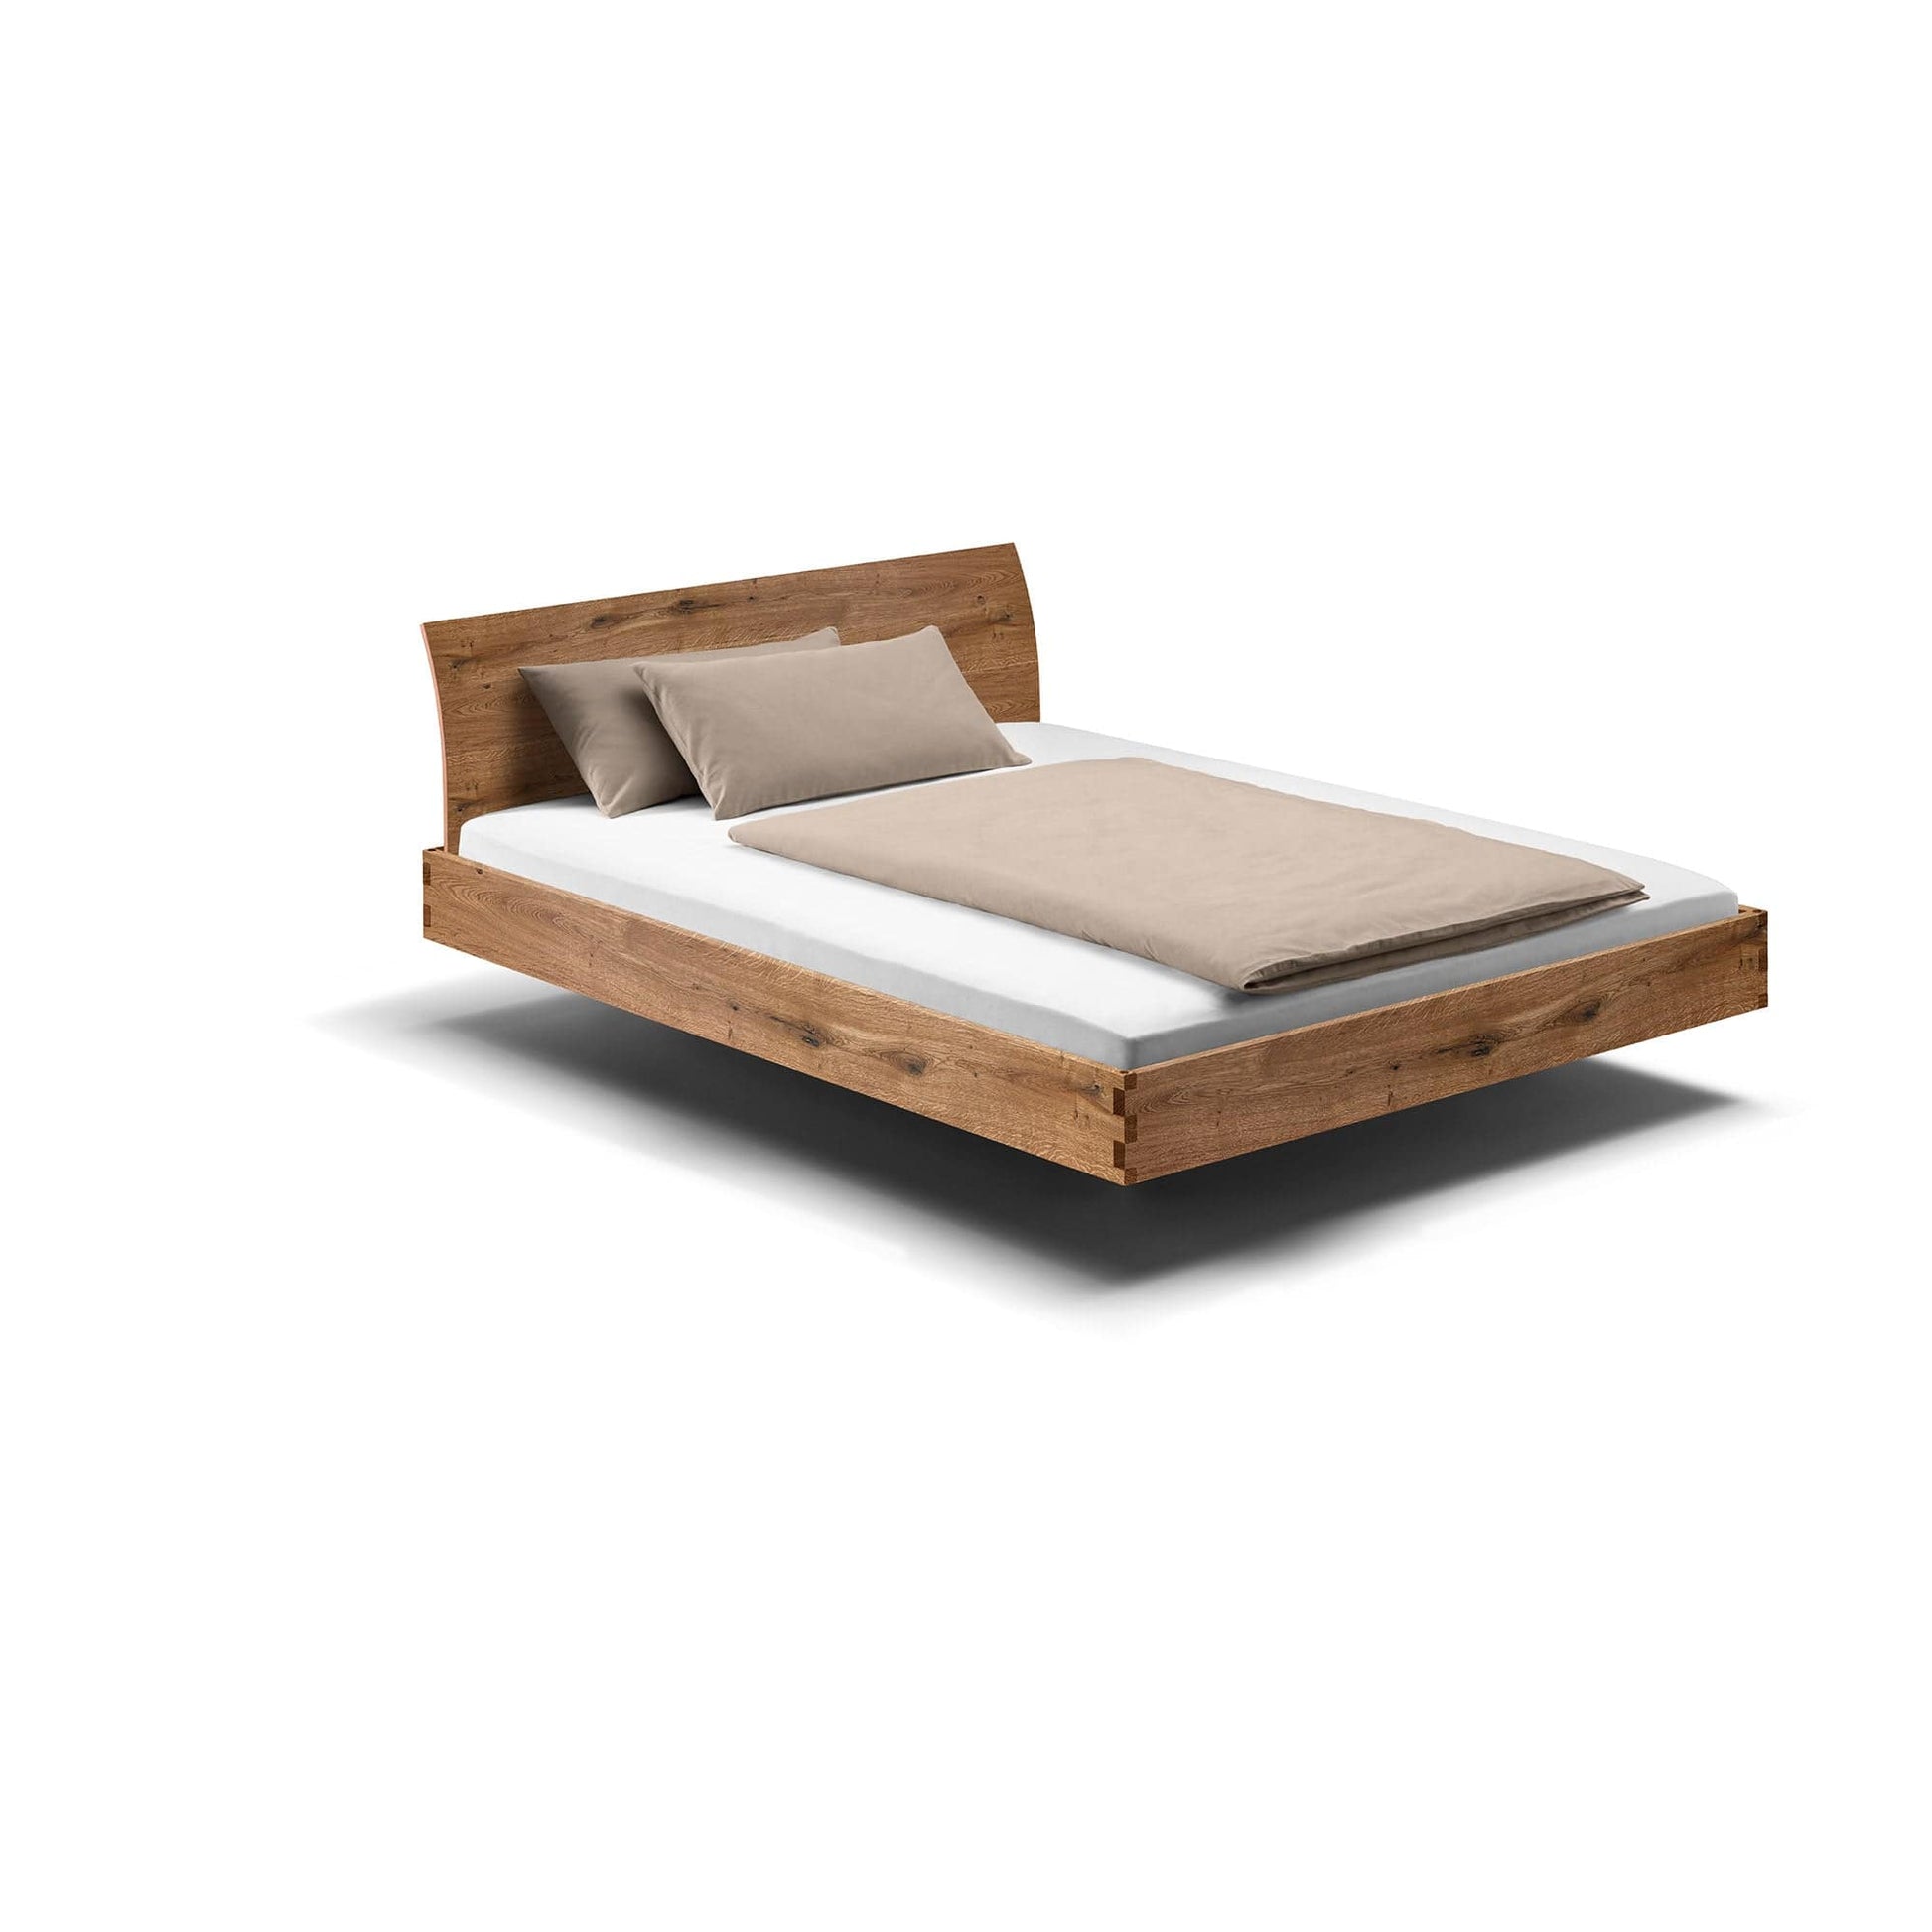 Designbetten aus Massivholz im Bettenfachgeschäft - Hochwertige Massivholz Betten Ausstellung bei Ludwigsburg und Stuttgart